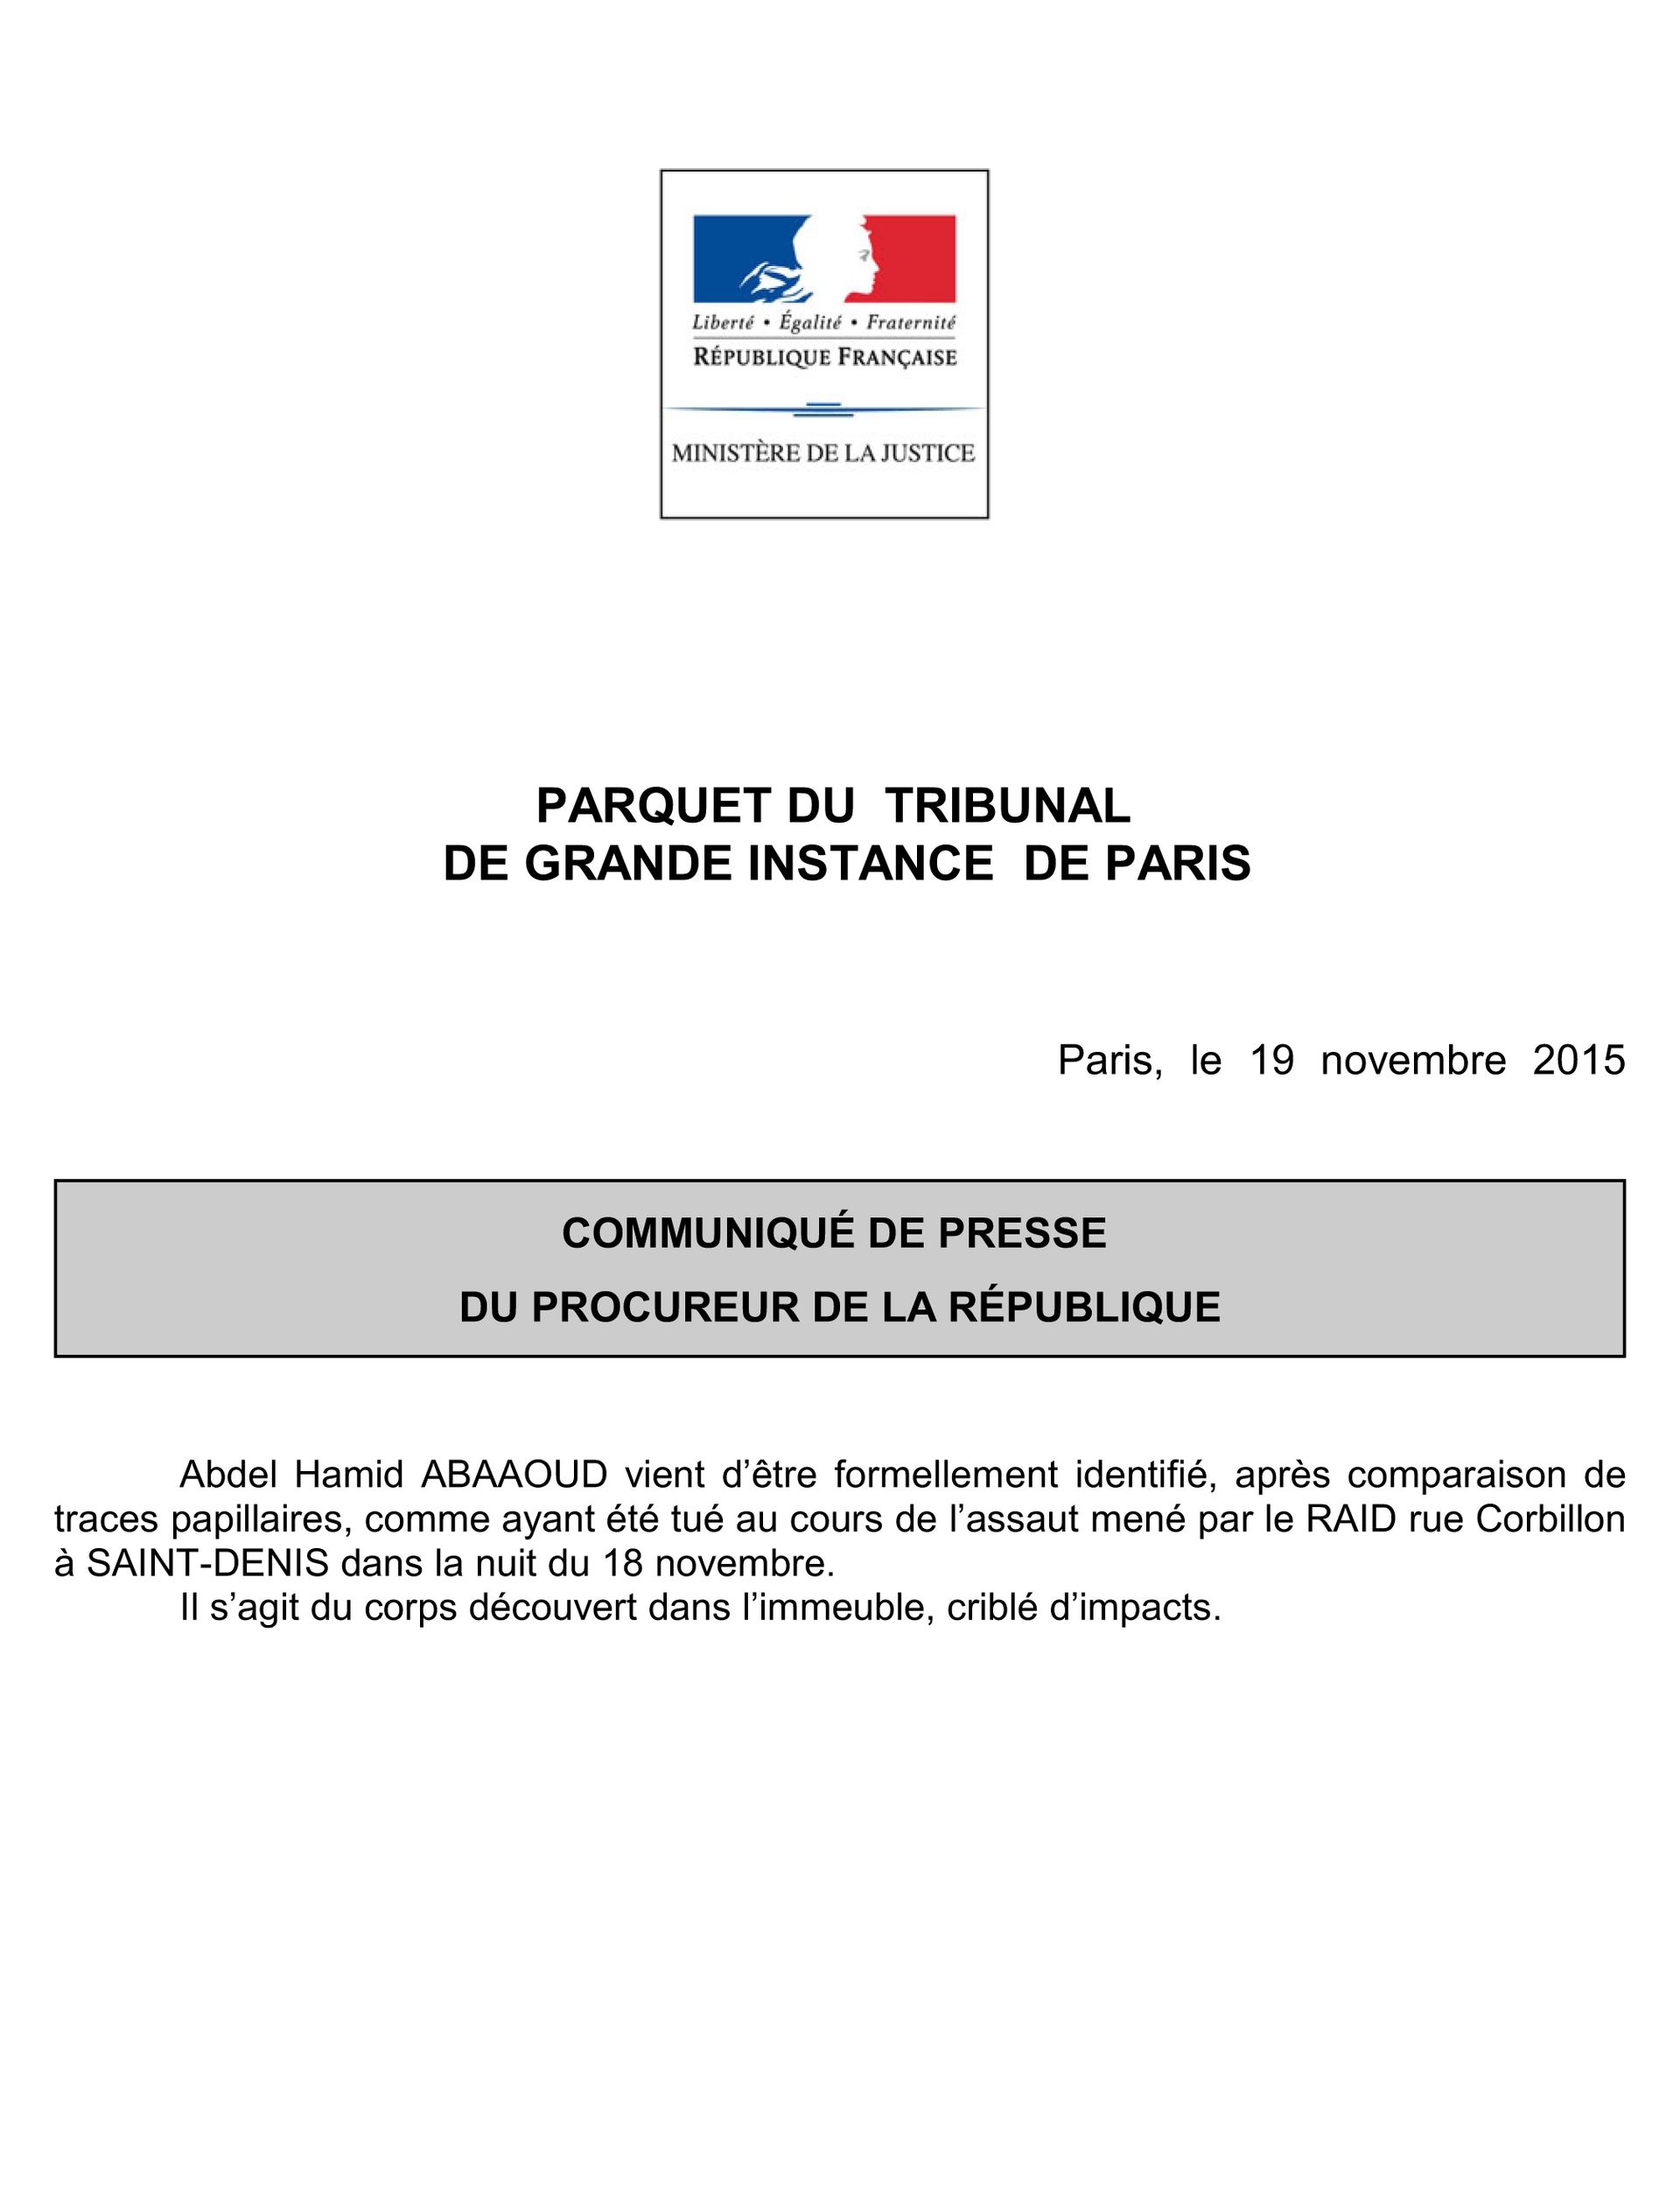 Le communiqué du Procureur de la République qui officialise le décès d'Abdelhamid Abaaoud lors de l'assaut de Saint-Denis. 